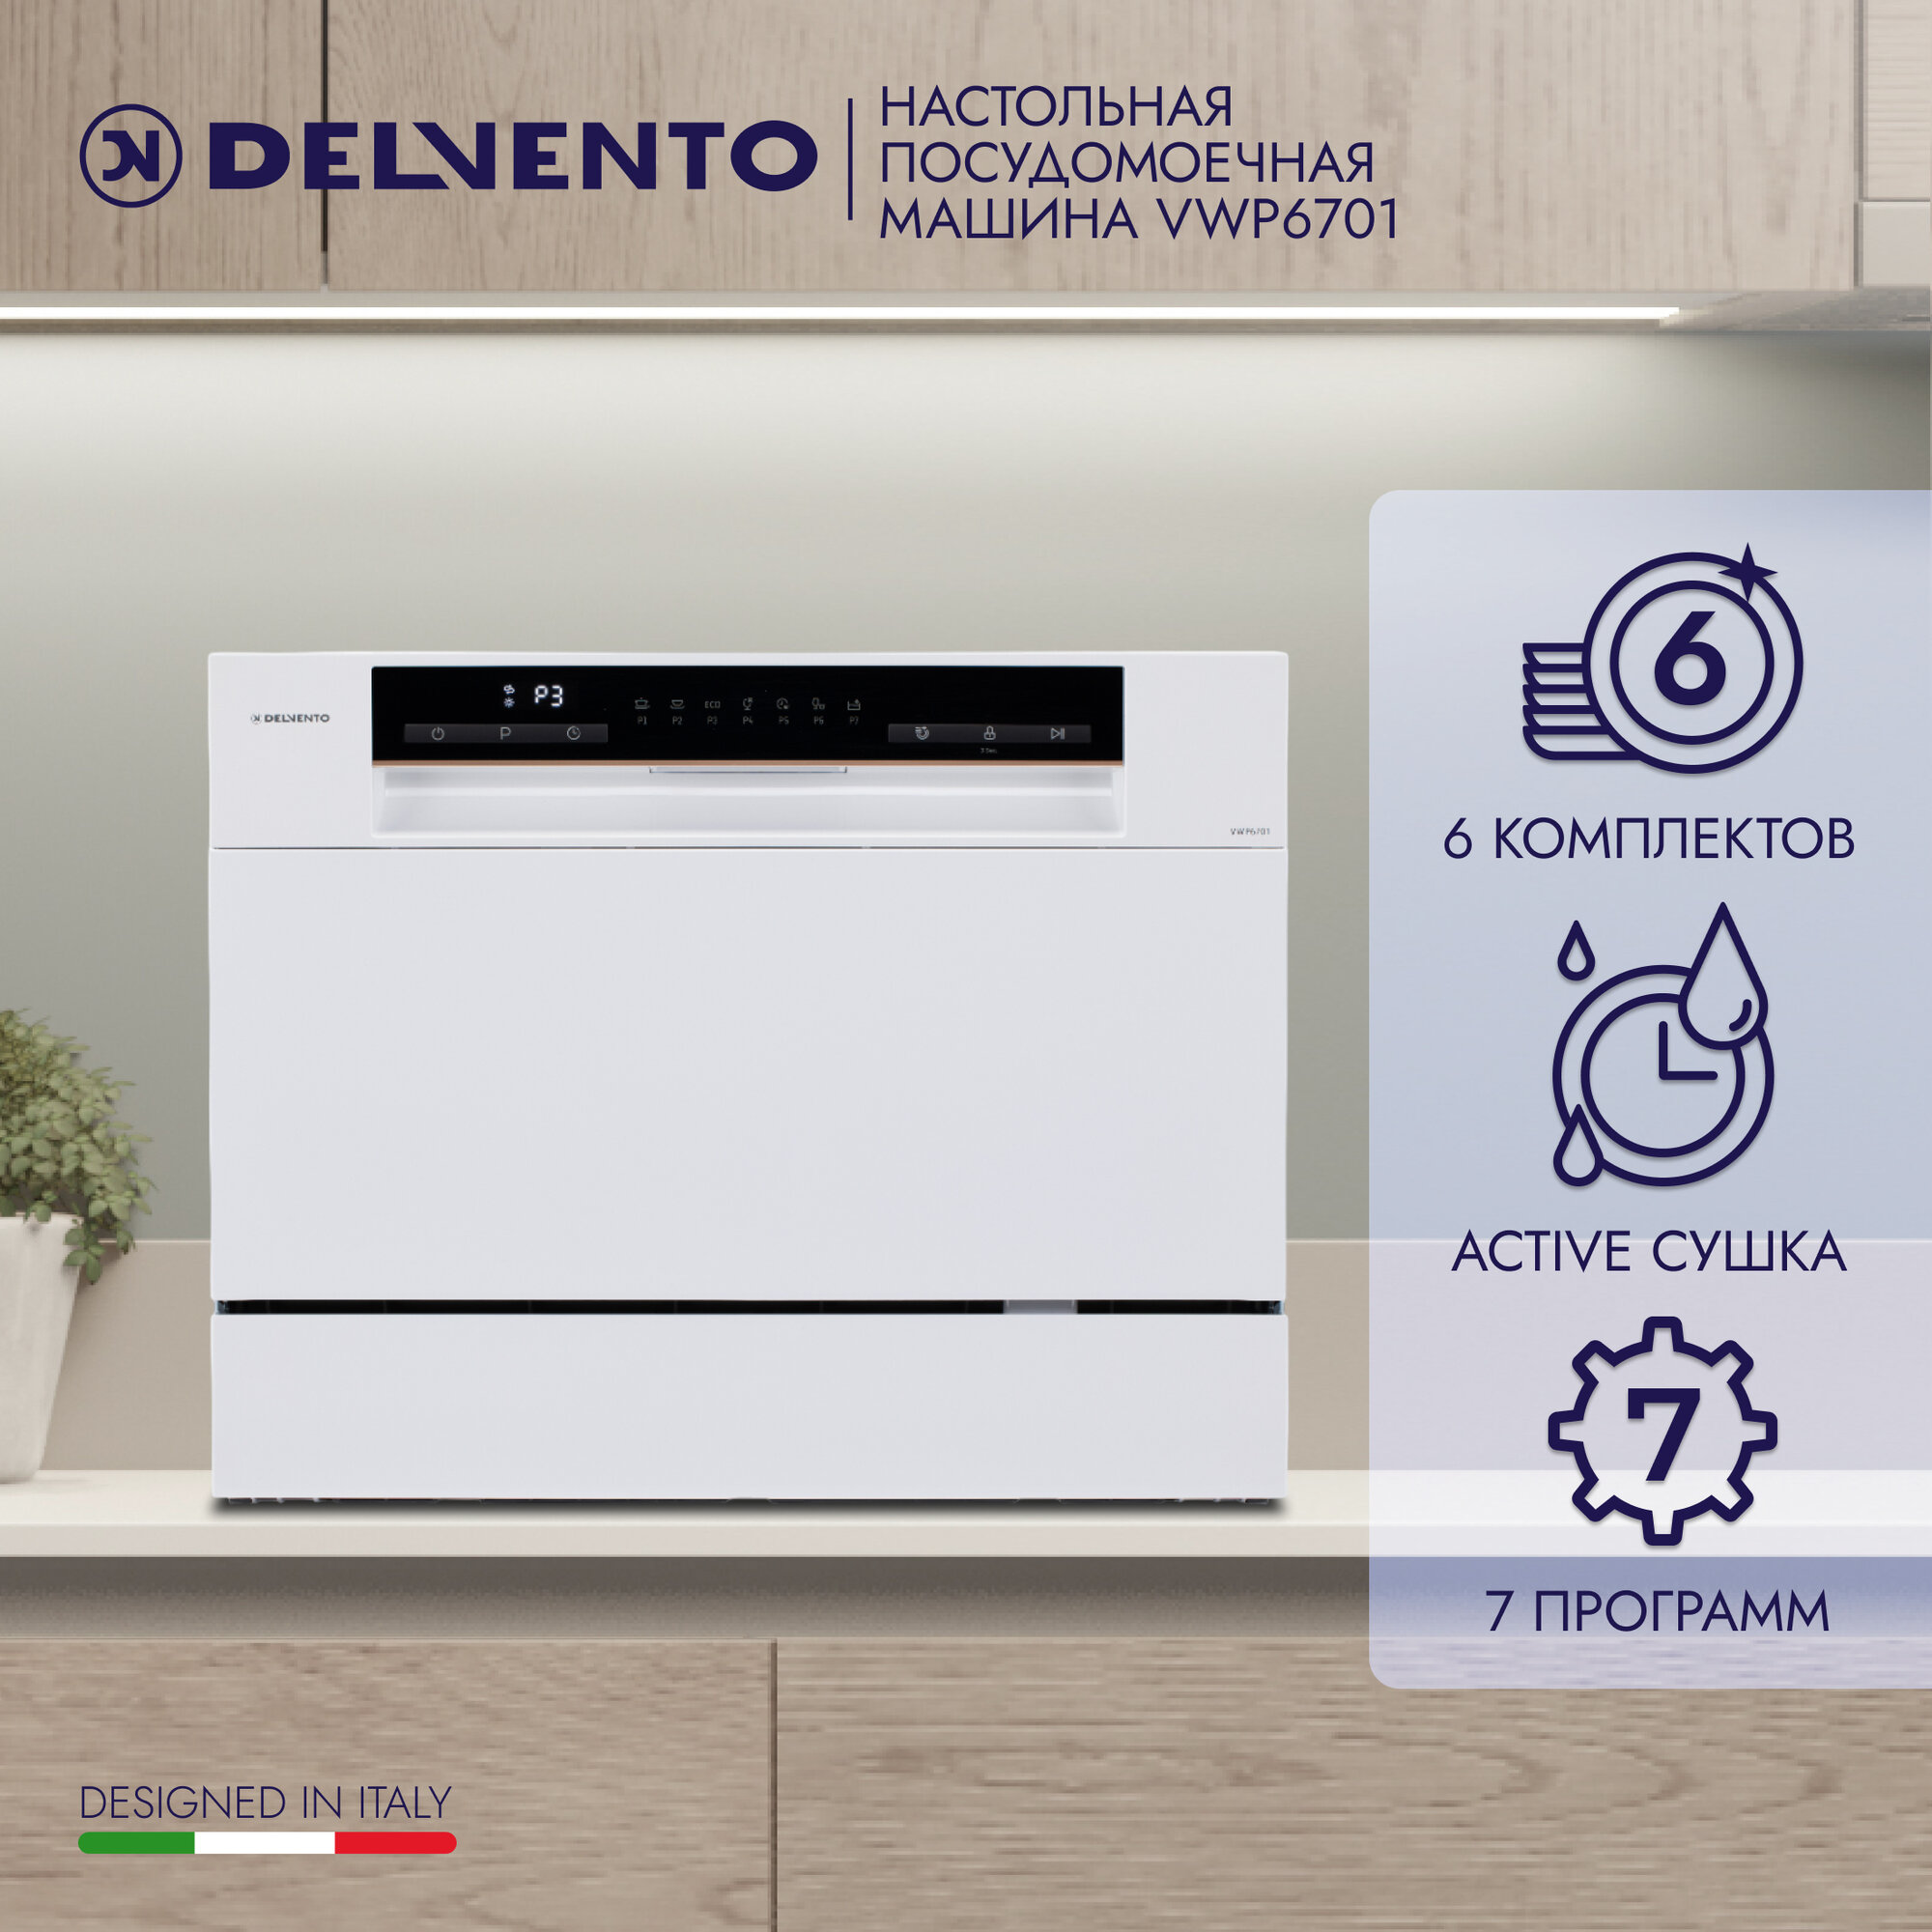 Посудомоечная машина настольная Delvento VWP6701 6 комплектов